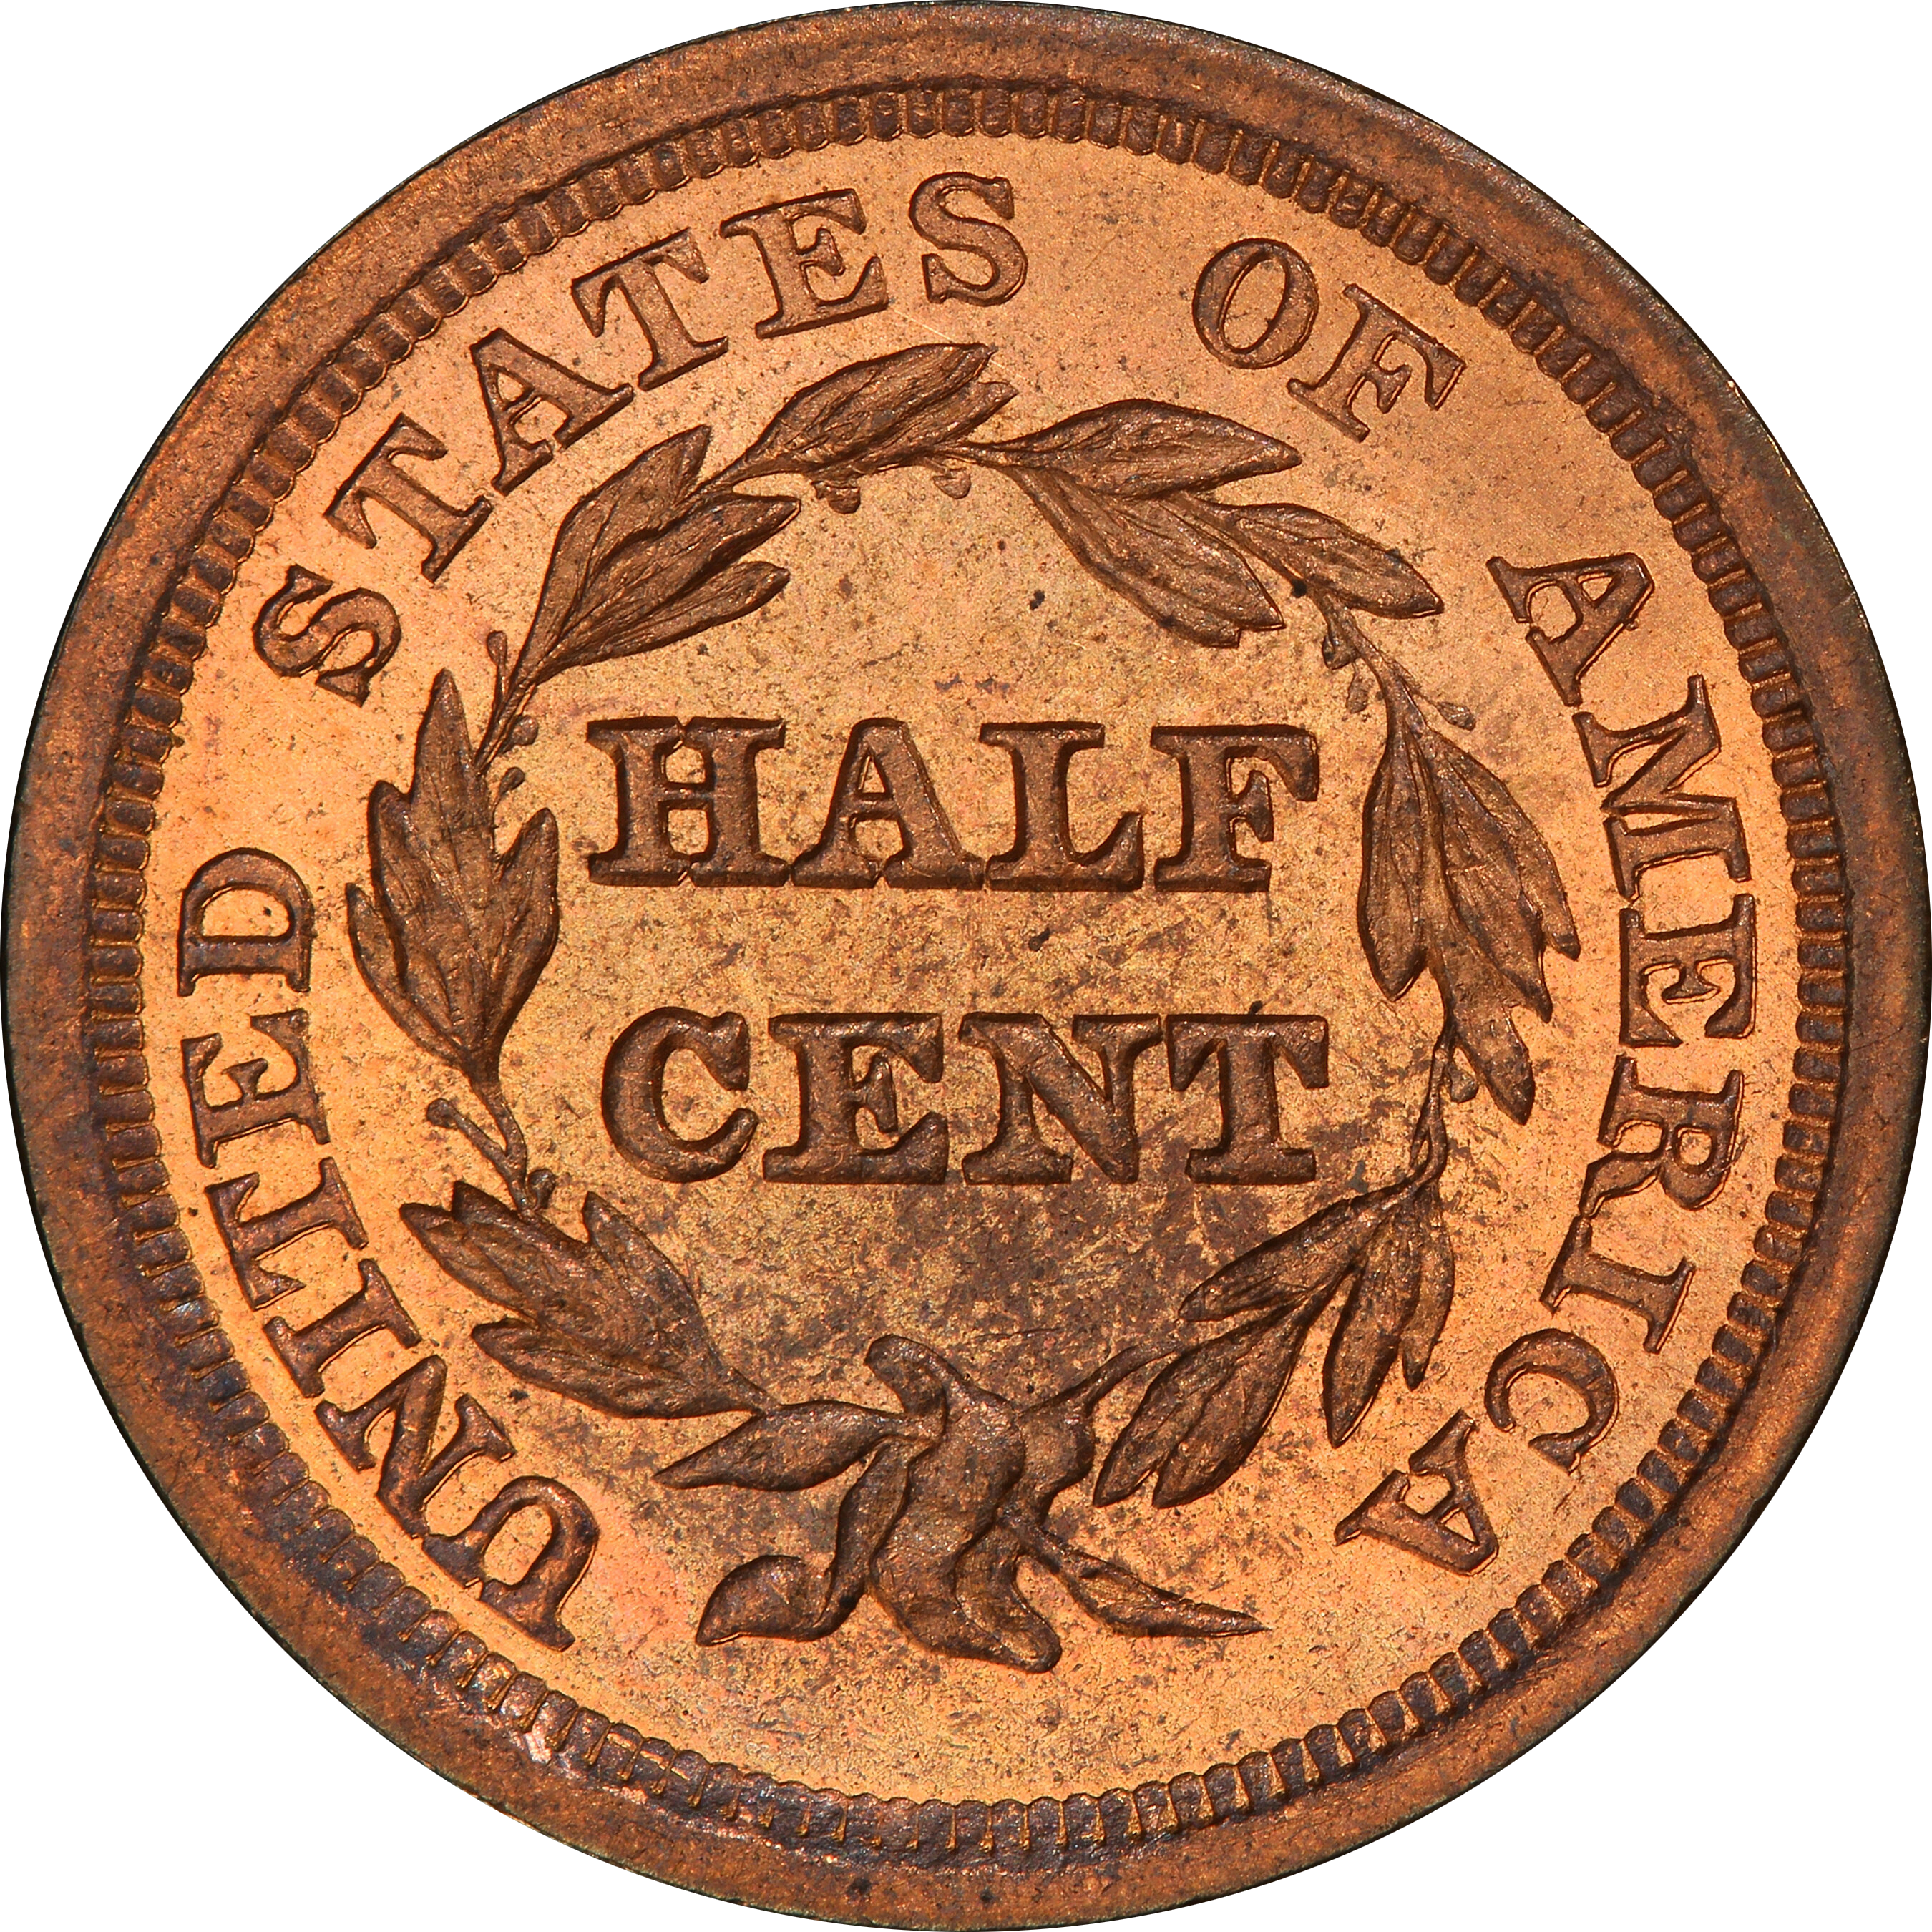 UNIQUE SPECIMEN: 1857 Braided Hair Half Cent - Half Cent